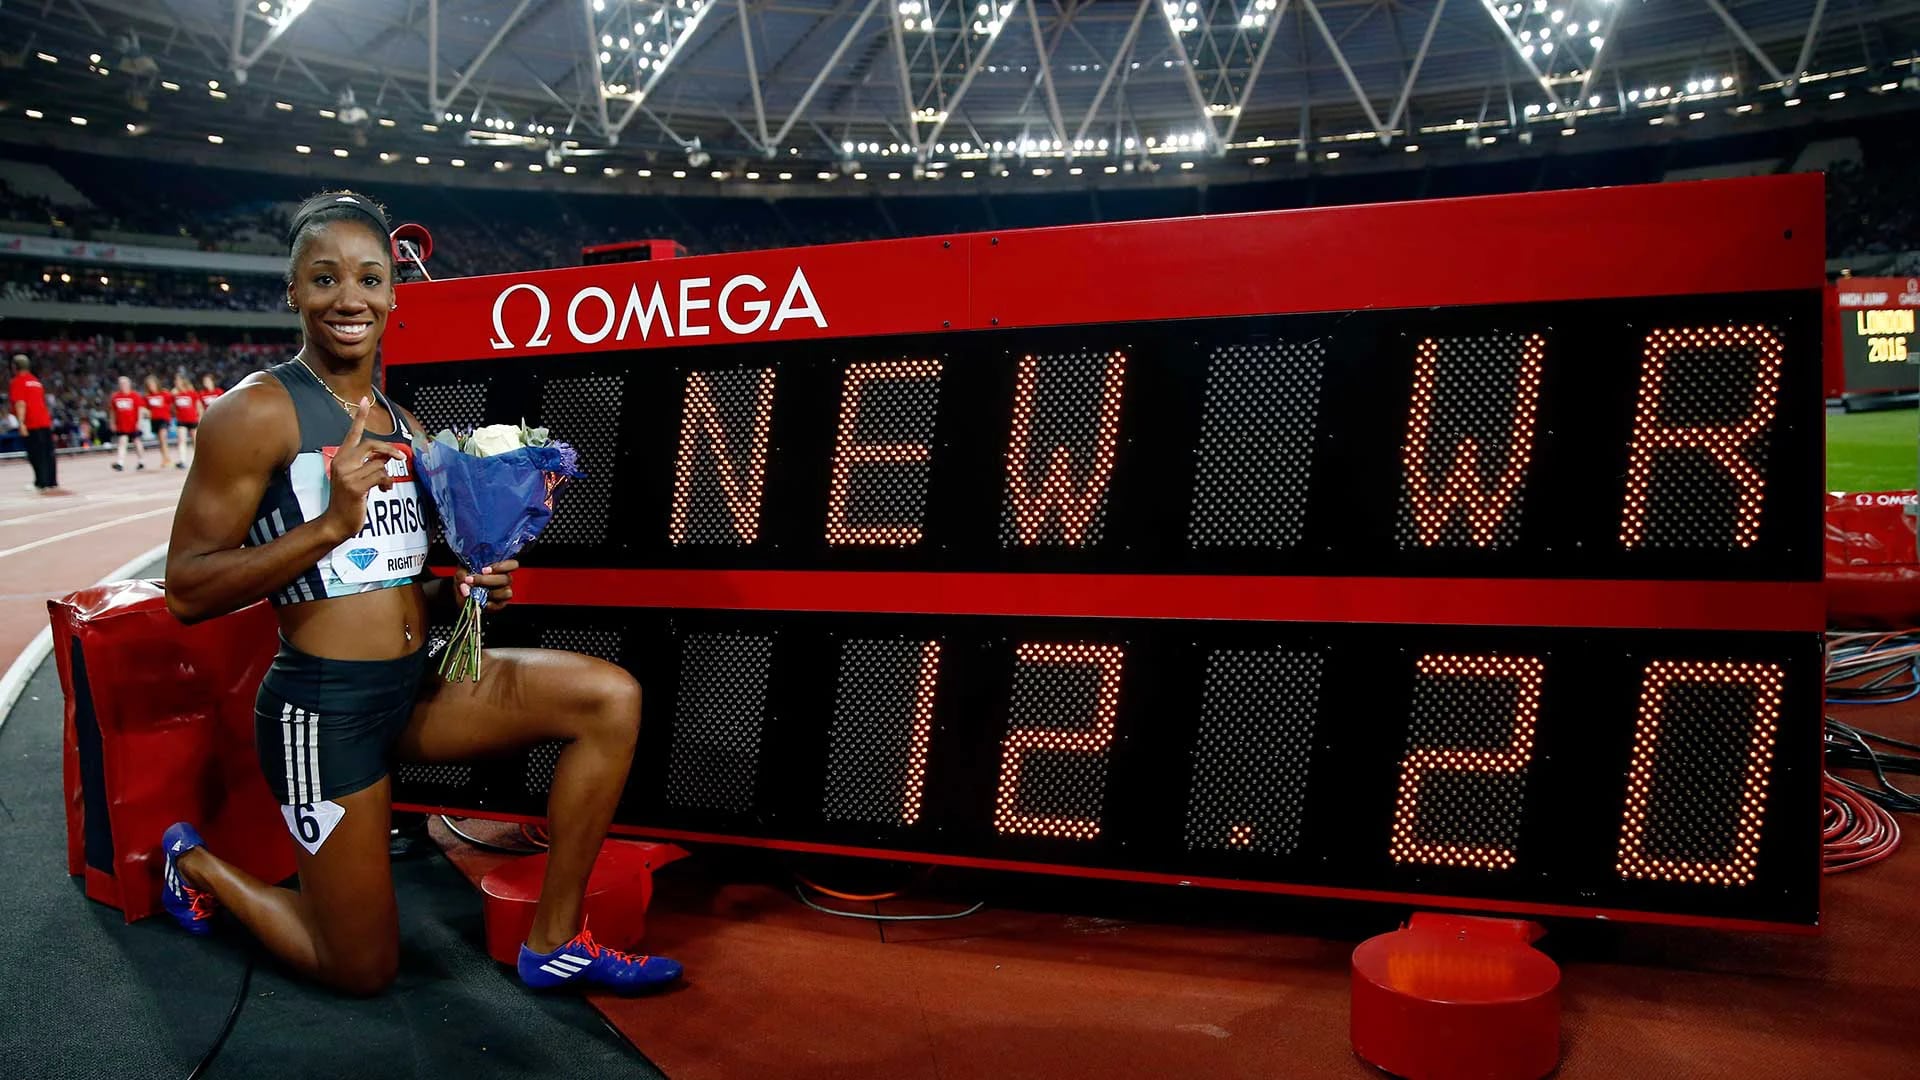 La estadounidense Kendra Harrinson, que no integra el equipo de su país para los Juegos Olímpicos, estableció un nuevo récord mundial en 100 metros con vallas al marcar un cronómetro de 12,20 segundos (Reuters)